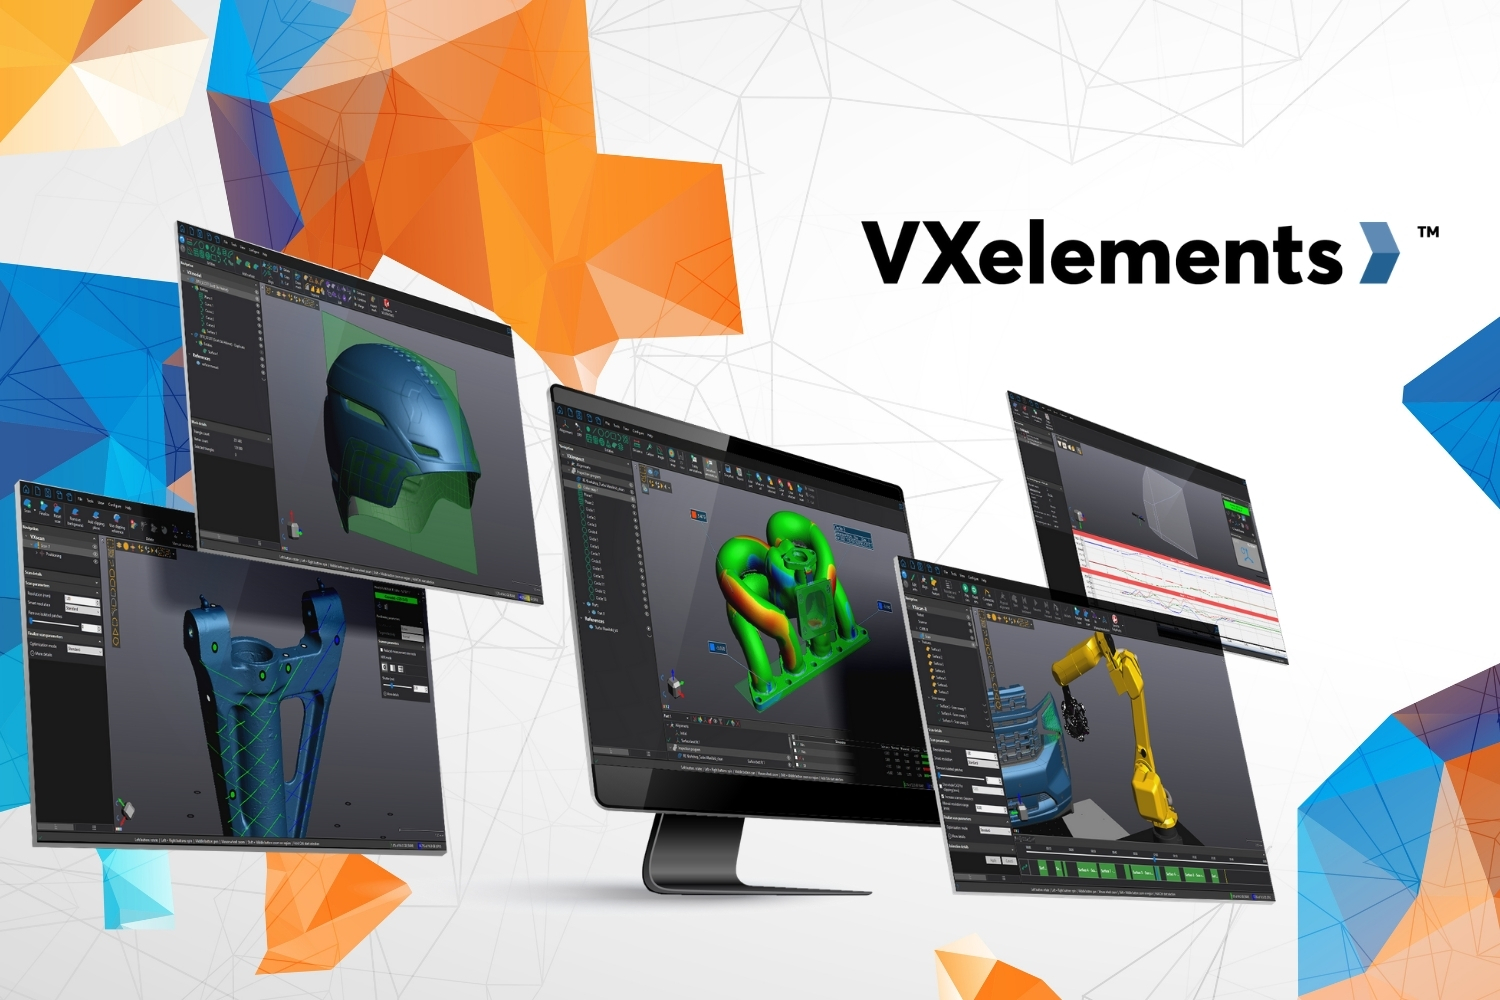 Creaform has launched the latest version of its VXelements platform, VXelements 9.0. Image via Creaform.